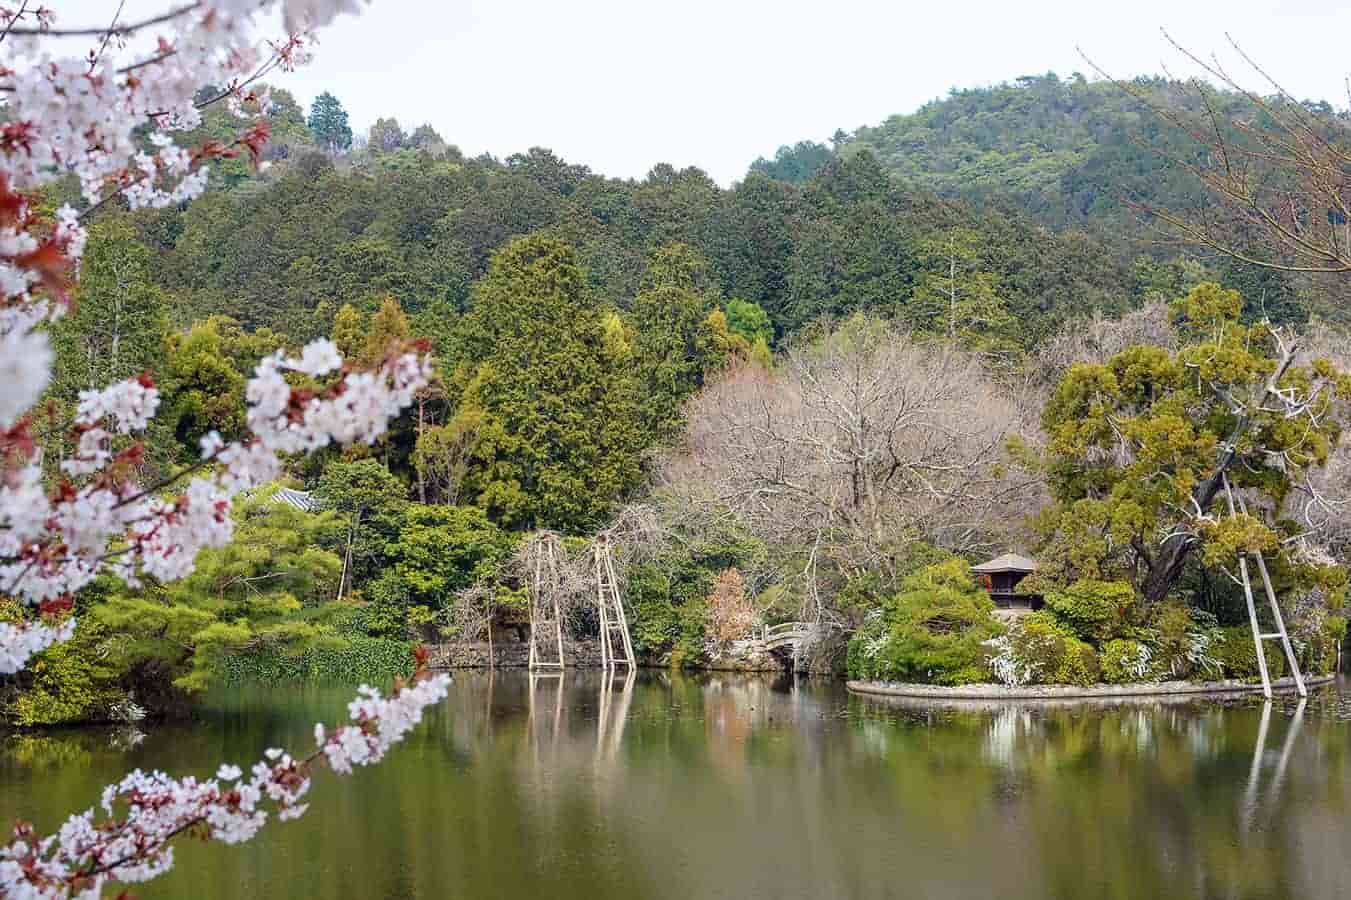 ryoan-ji-lake-park